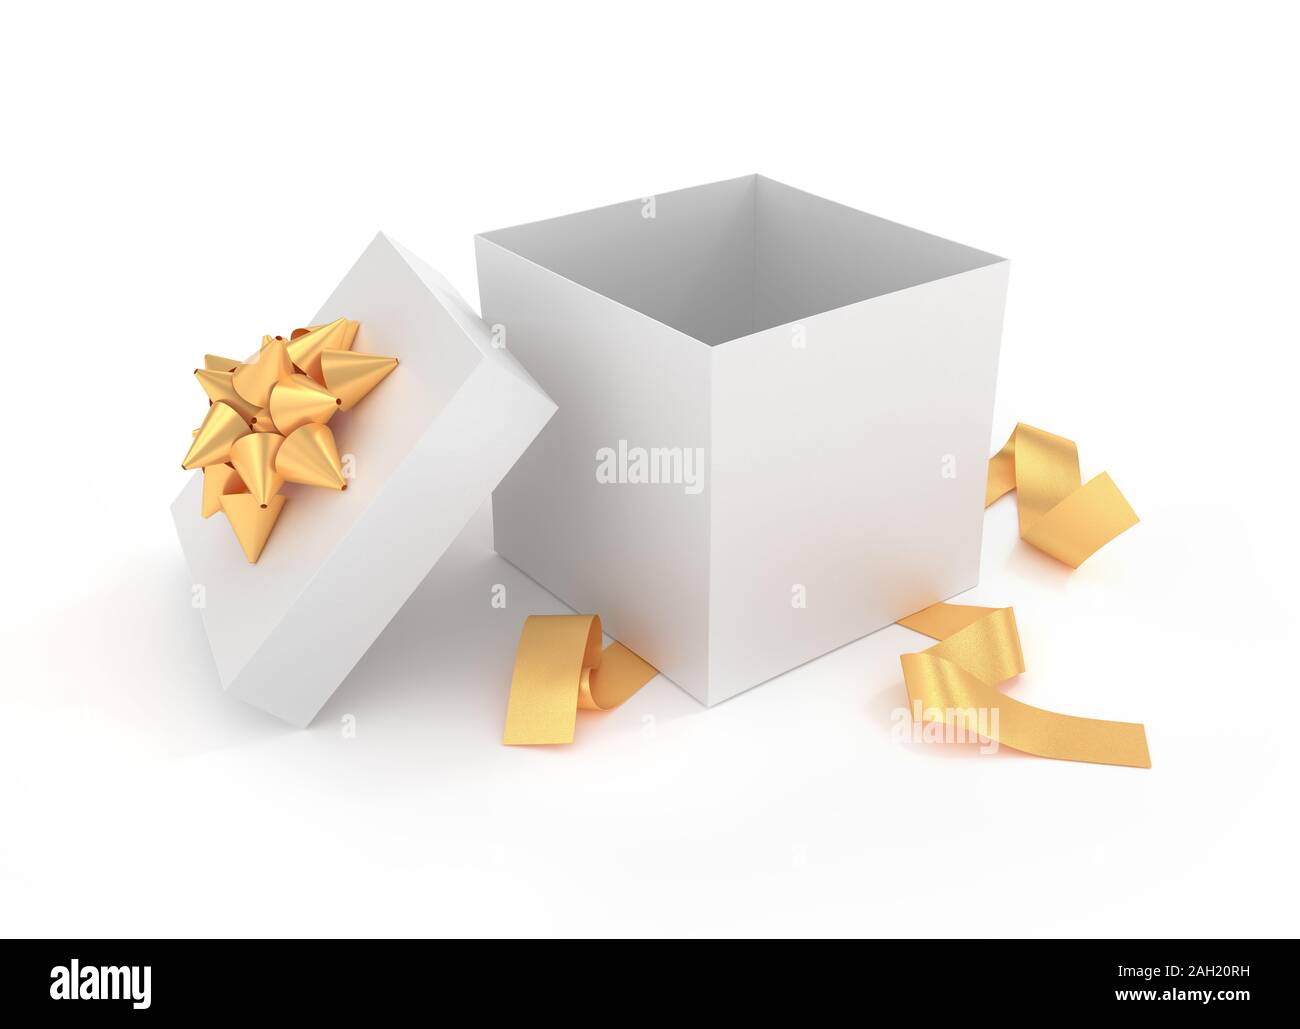 Disimballato elegante confezione regalo - Immagine 3D rappresentata Foto Stock